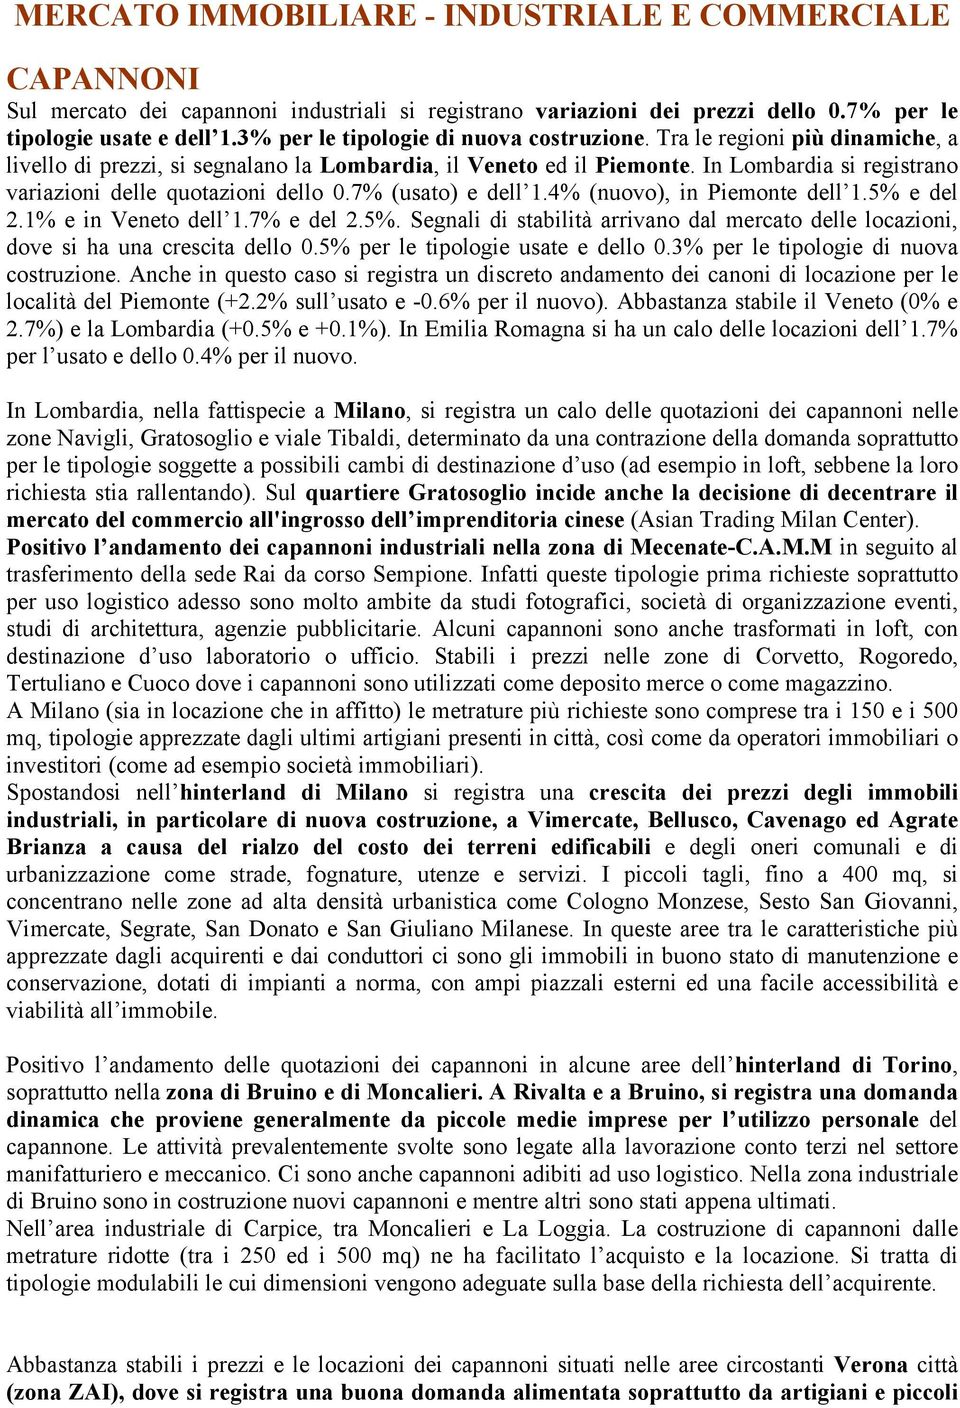 In Lombardia si registrano variazioni delle quotazioni dello 0.7% (usato) e dell 1.4% (nuovo), in Piemonte dell 1.5% 